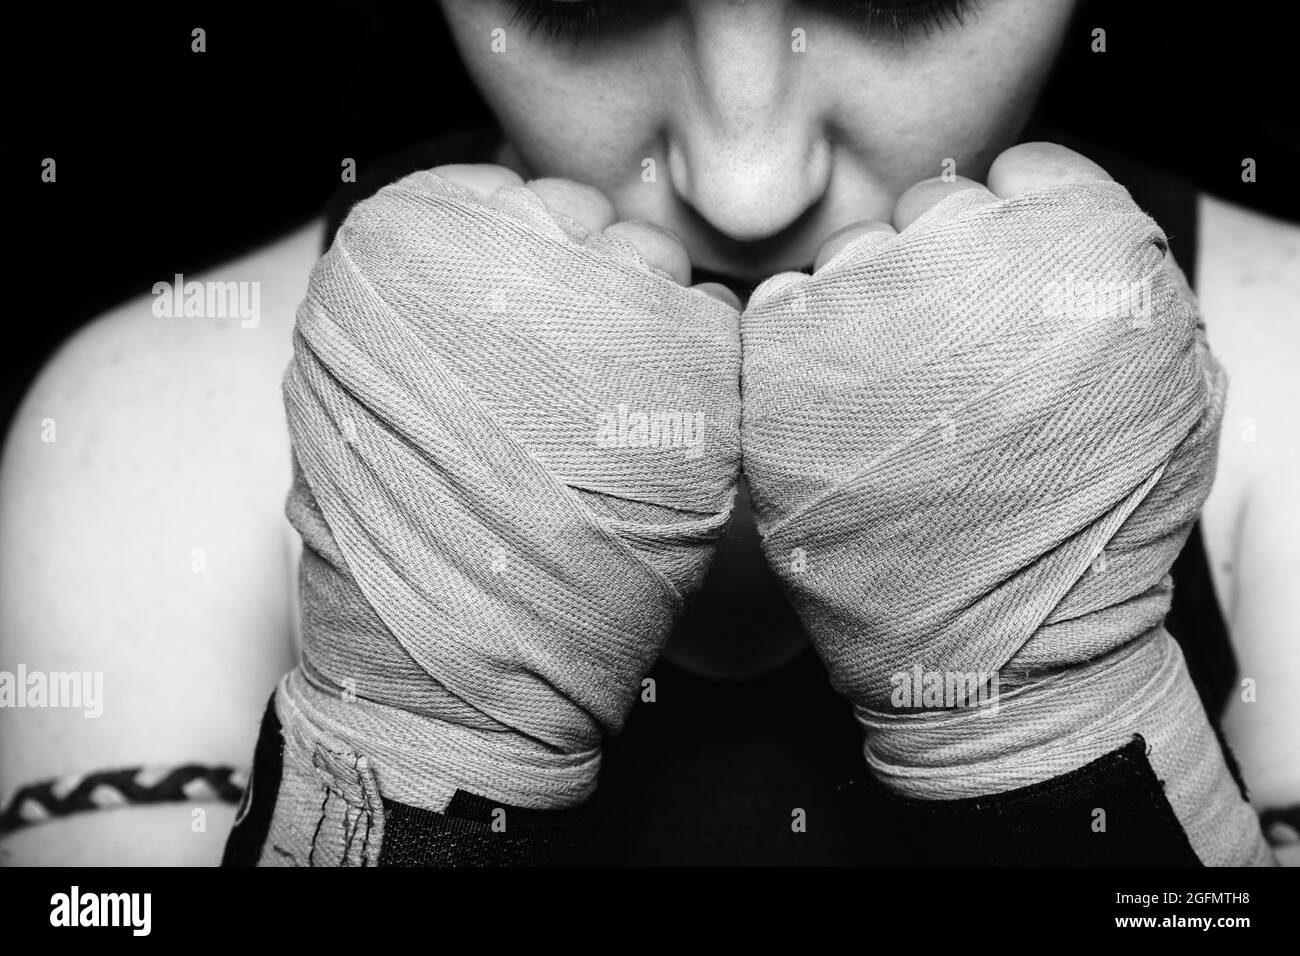 Muay Thai Kämpferin Vorbereitung auf den Kampf. Nahaufnahme Schwarz-Weiß-Porträt vor schwarzem Hintergrund. Stockfoto